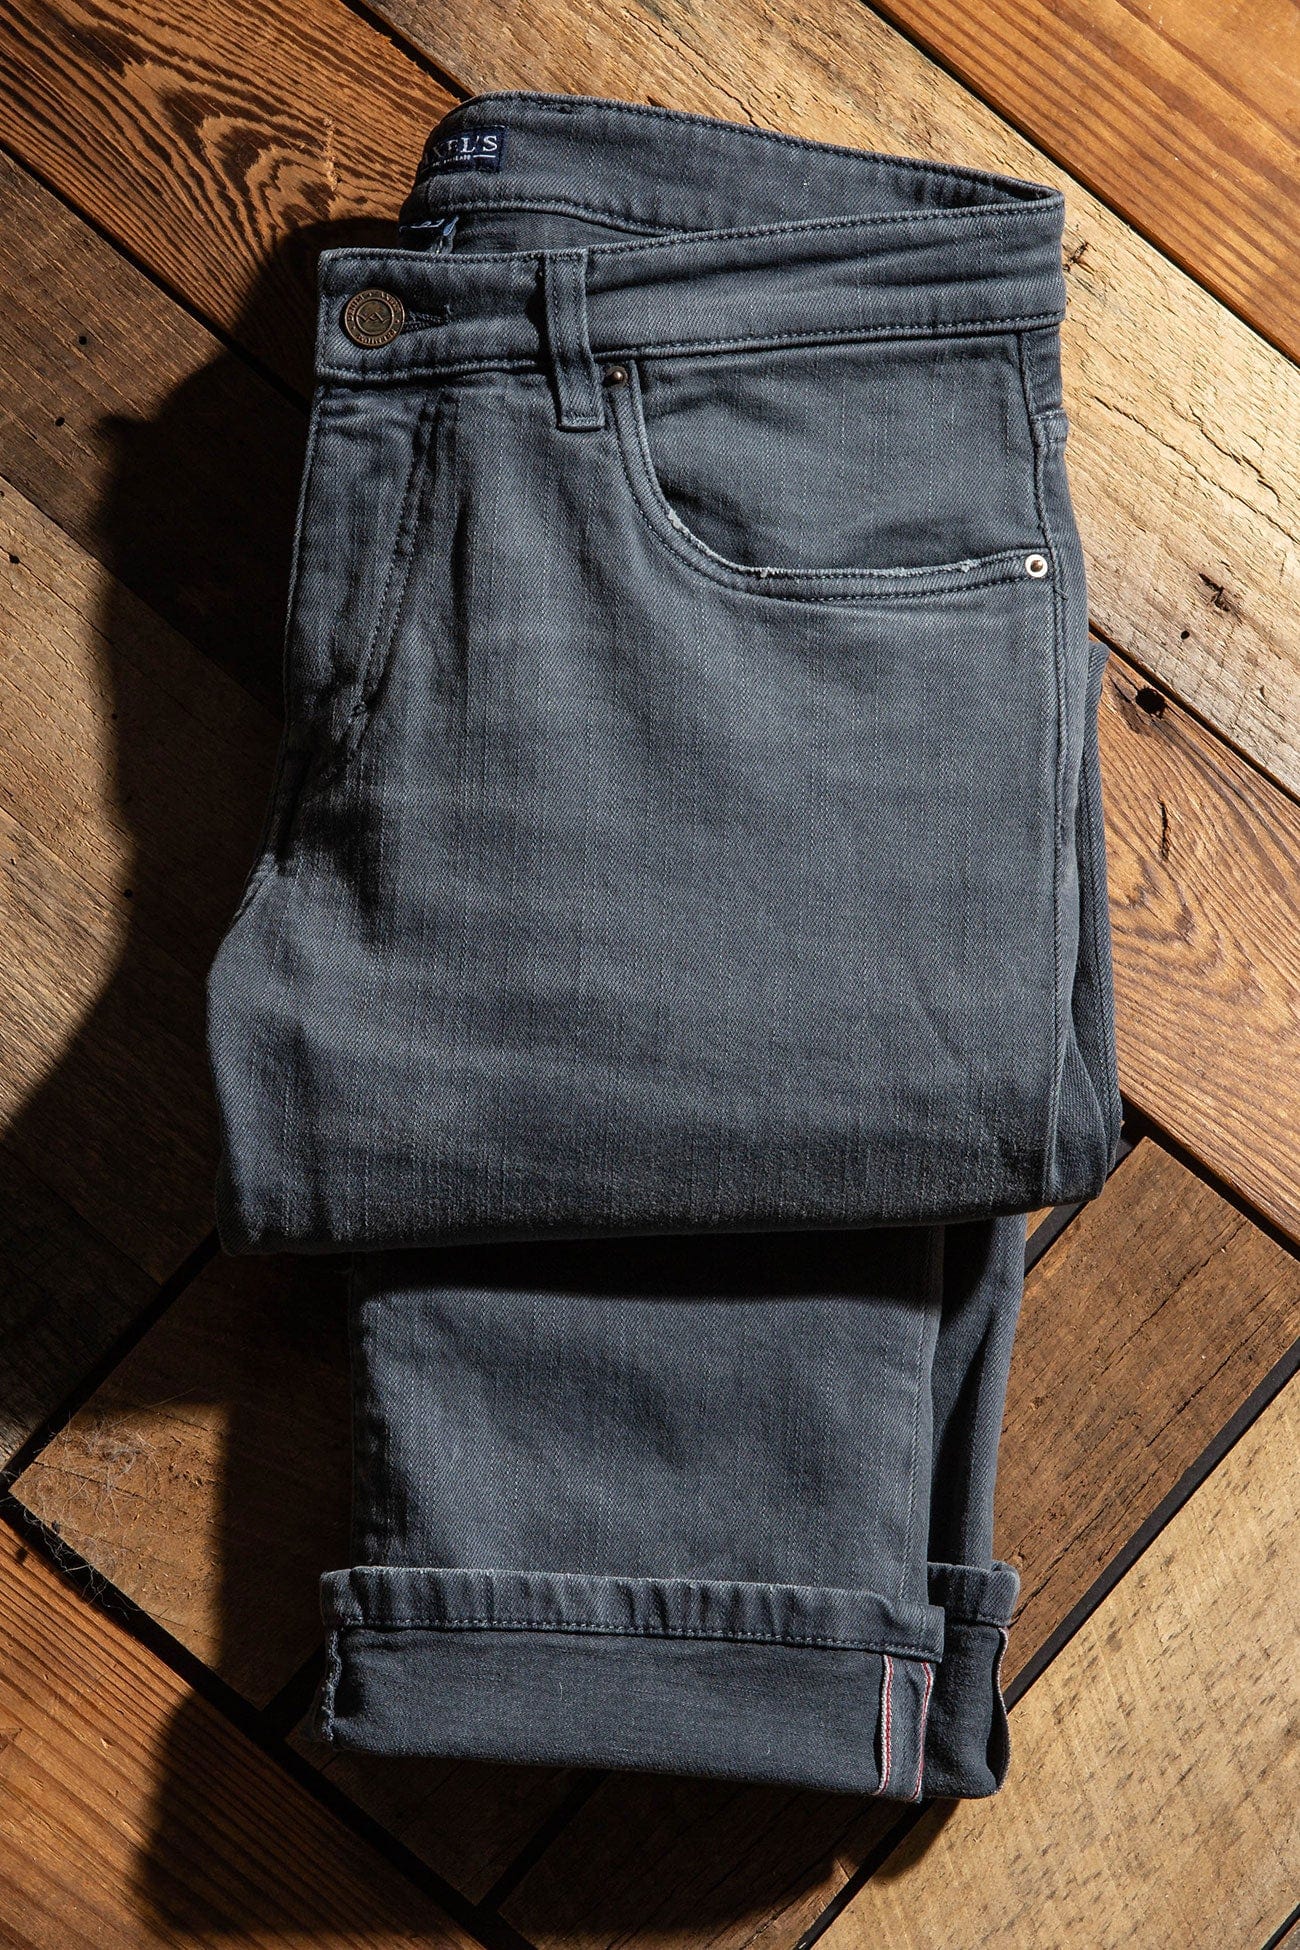 Axels Premium Denim Tucson Selvedge Denim In Acciaio Mens - Pants - 5 Pocket